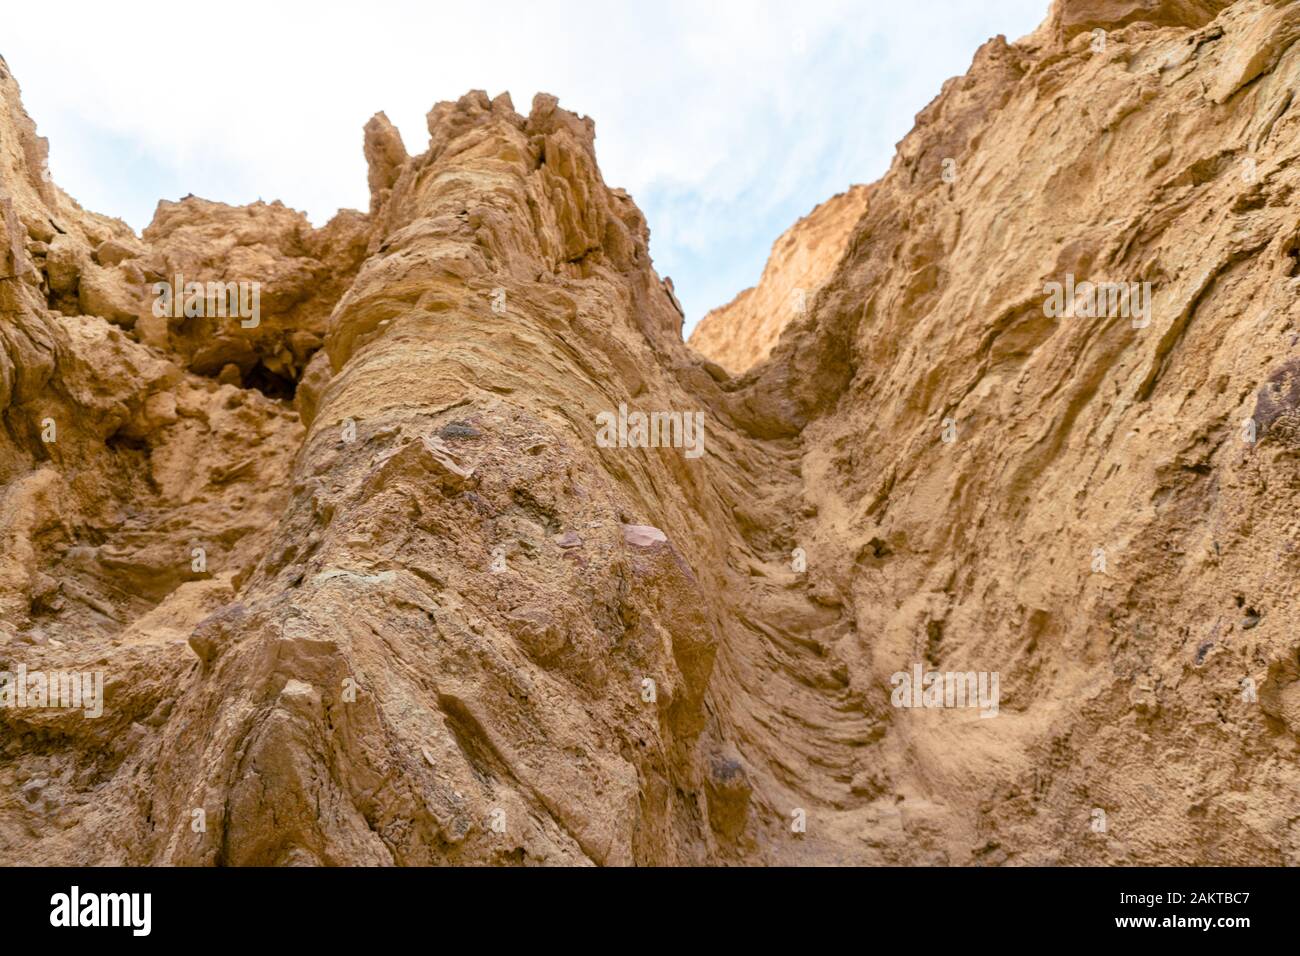 Der Todes-Valley-Nationalpark befindet sich in der Mojave-Wüste und ist der am stärksten rieselende Nationalpark der Vereinigten Staaten und einer der heißesten Orte der Erde Stockfoto